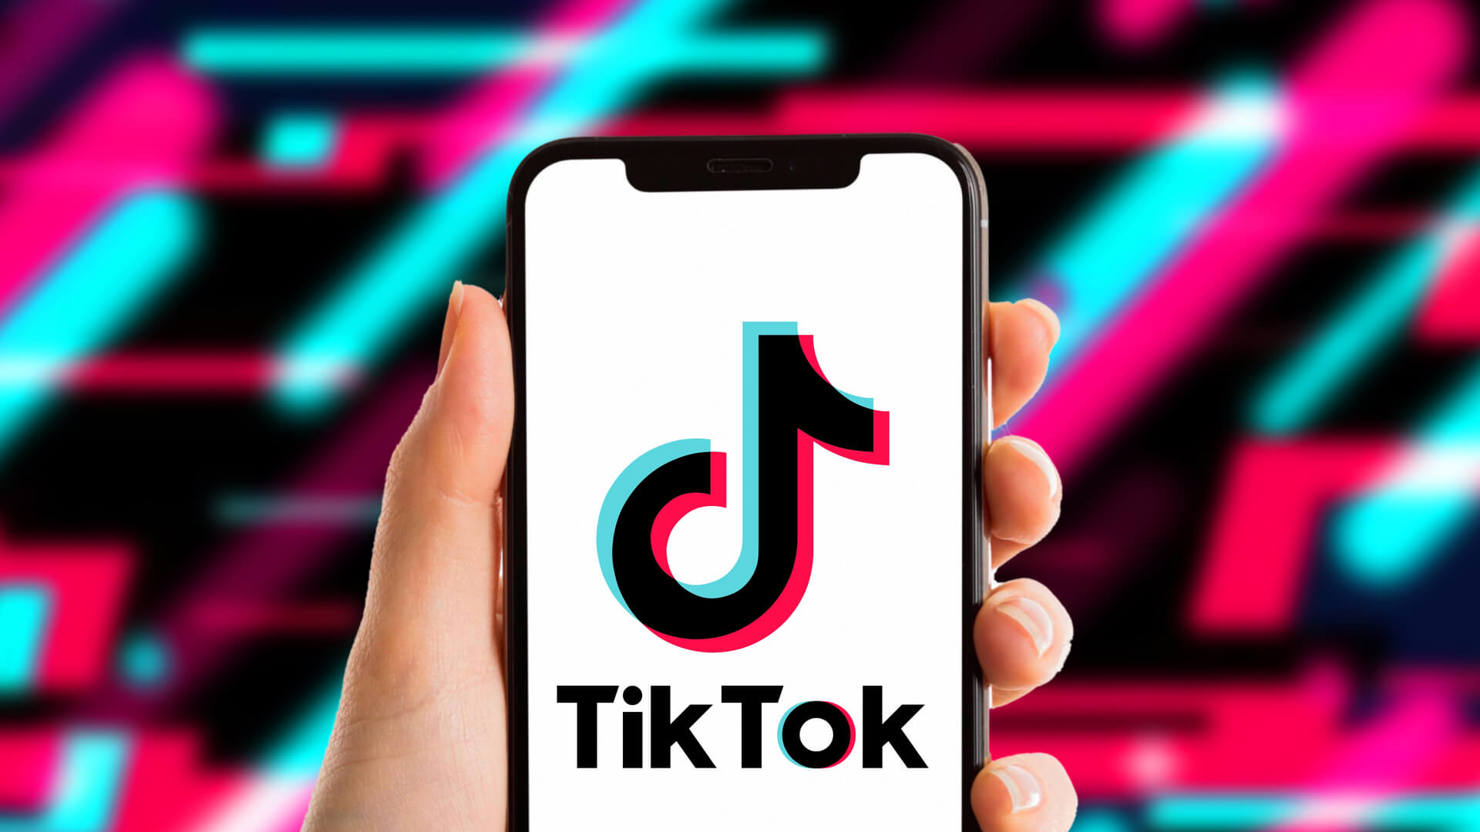 TikTok, nền tảng chia sẻ video của ByteDance bị điều tra tại châu Âu.